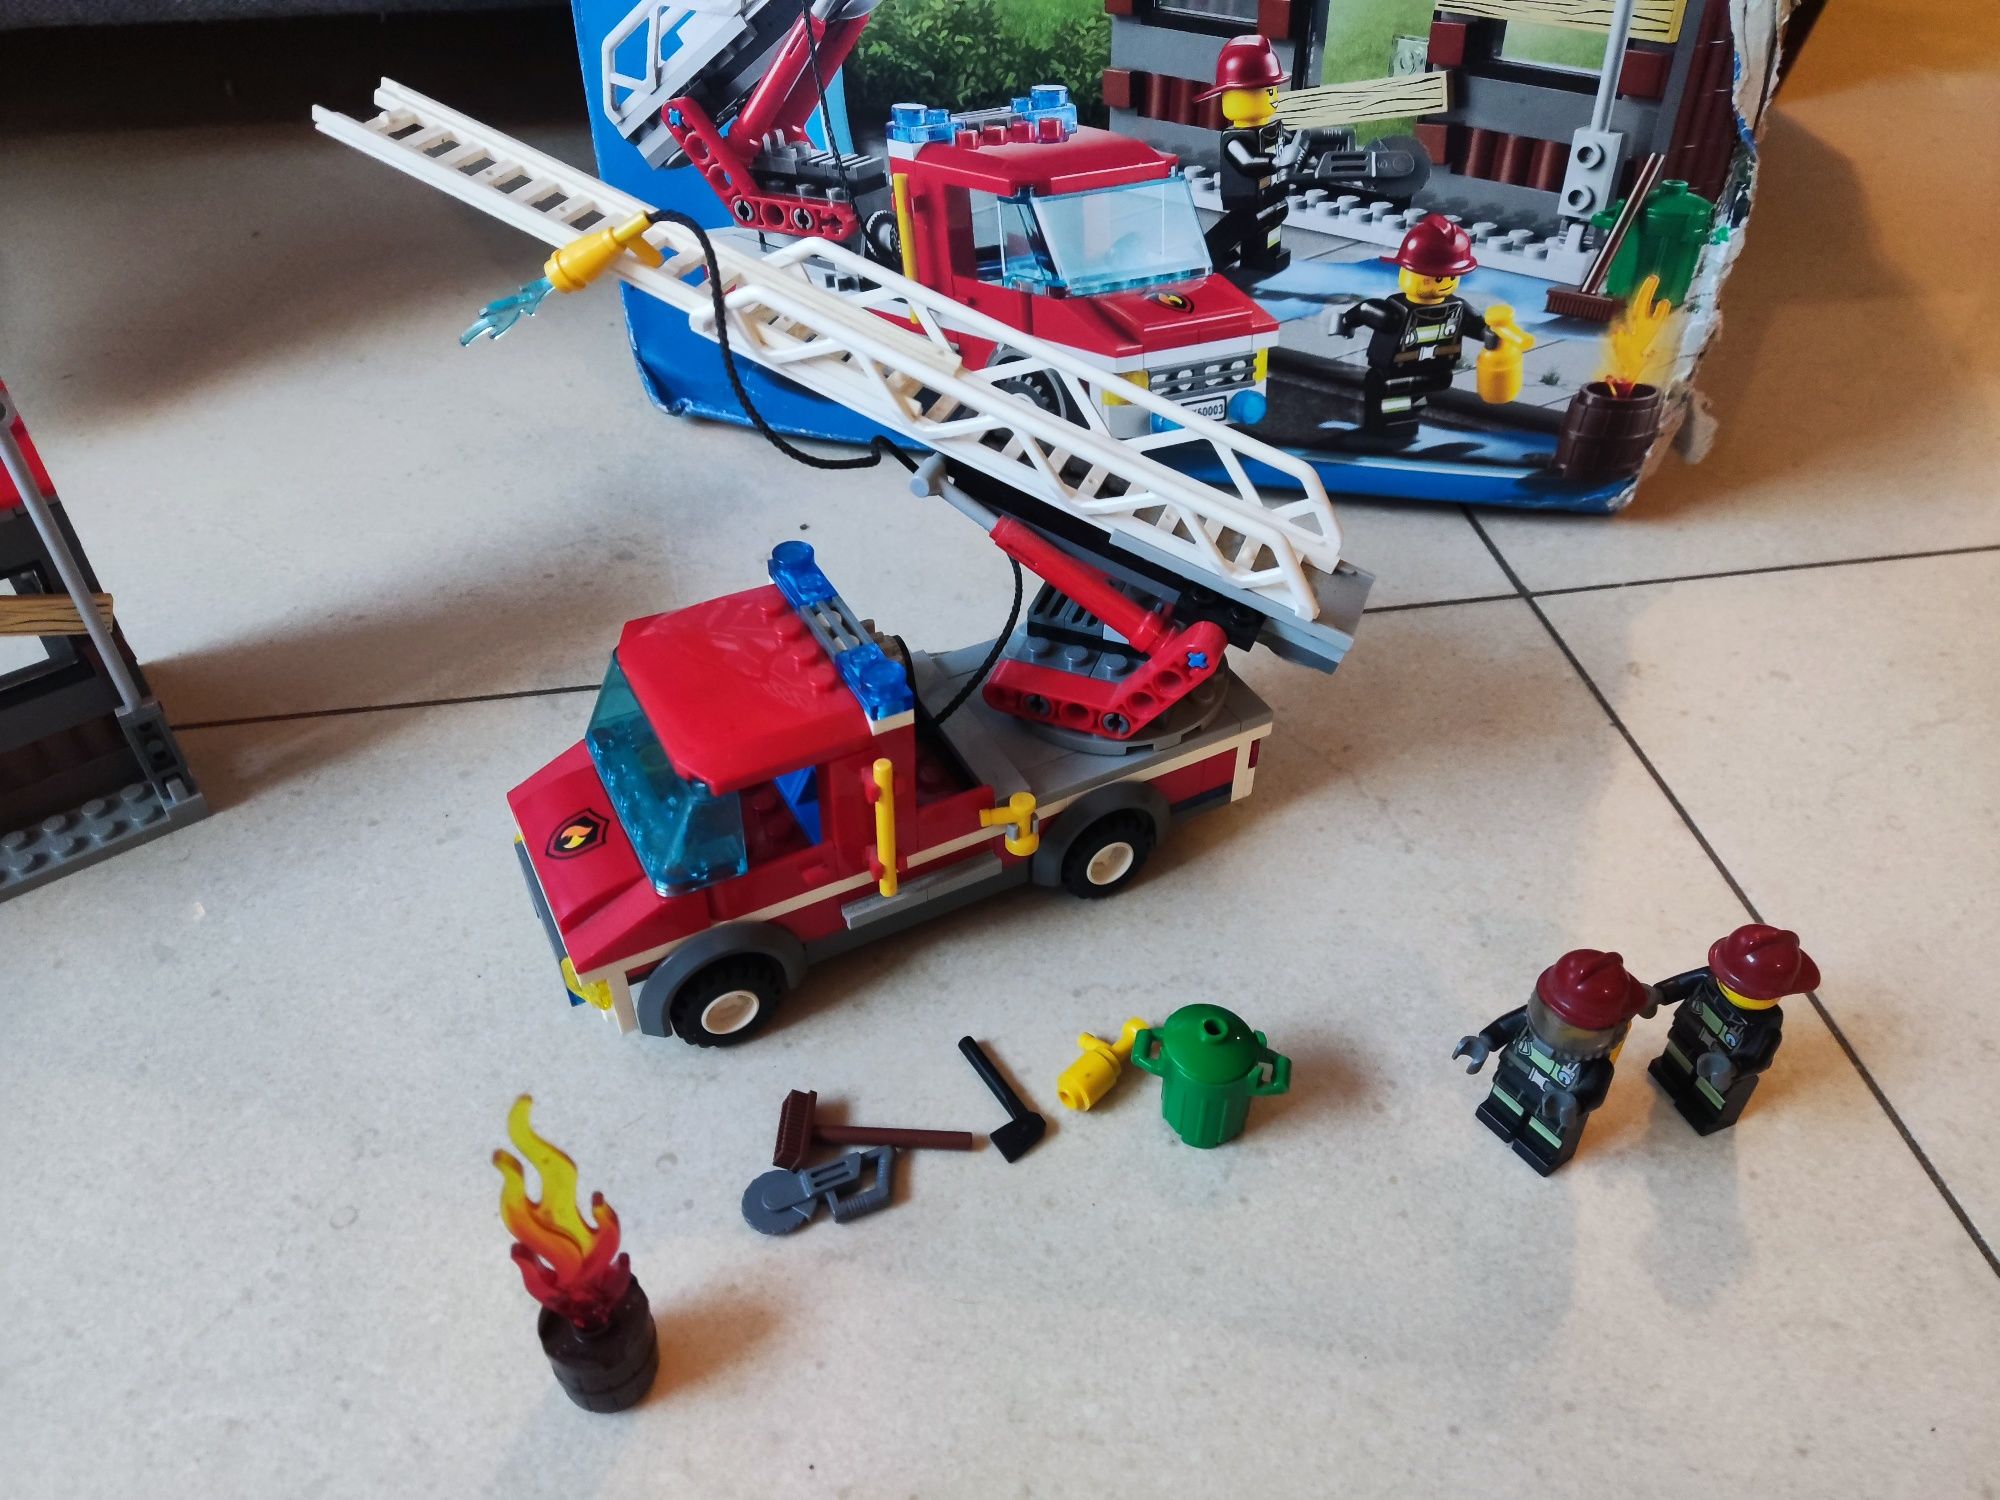 Lego straż pożarna płonący dom 60003